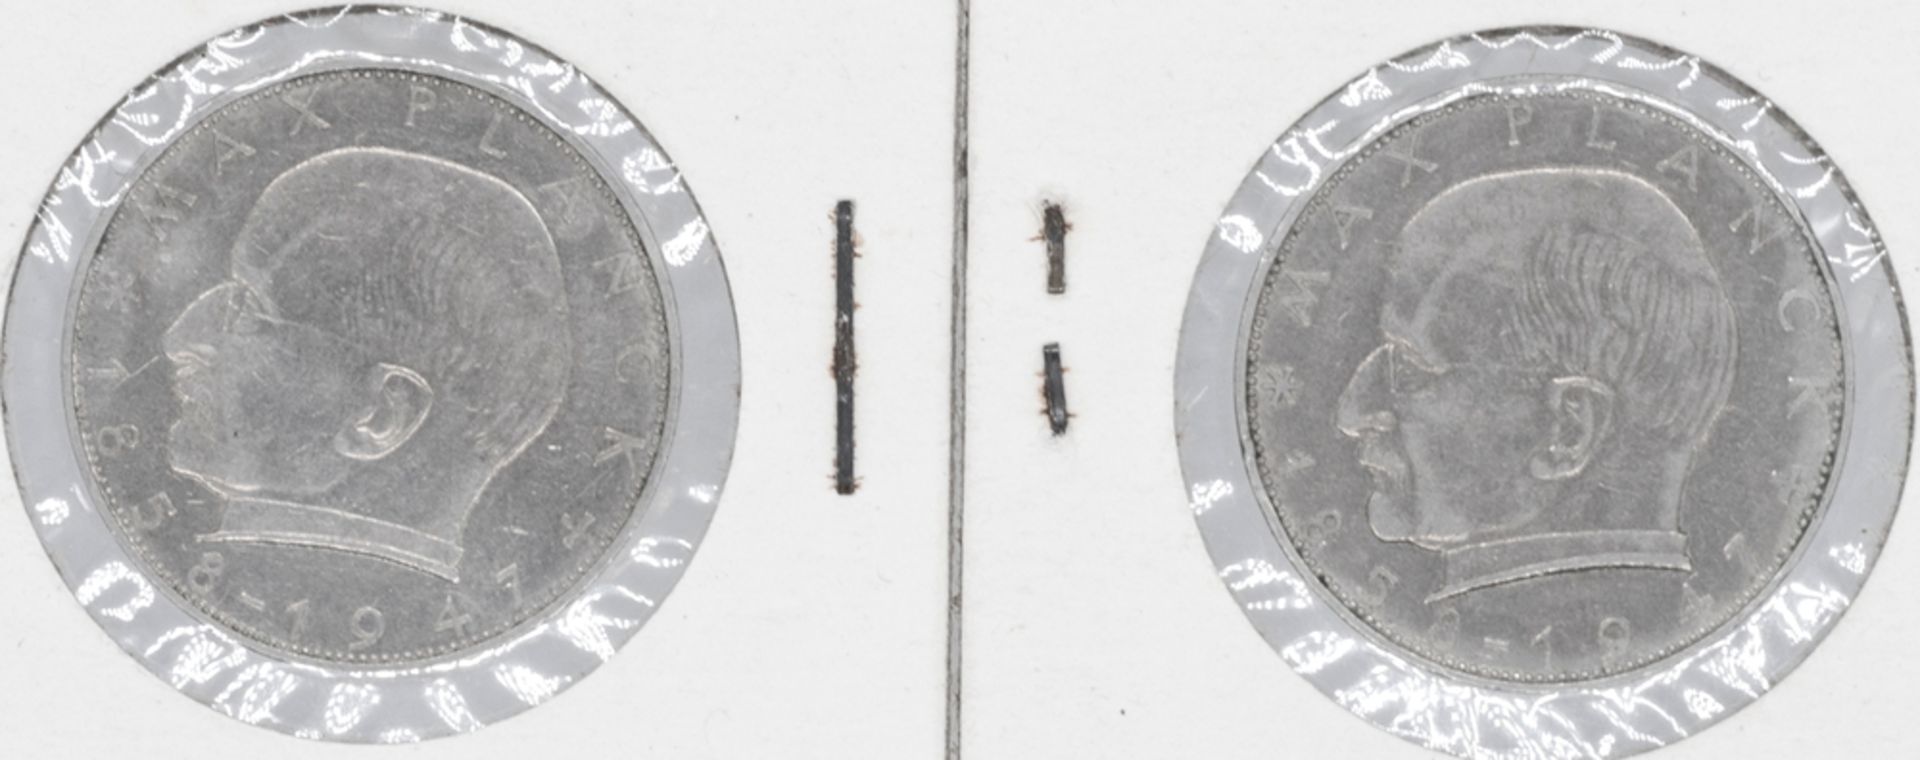 BRD 1961/67, 2 x 2 DM - Münzen mit Prägefehlern am Rand: 1 x 1961 "FINIGKFIT" und 1967 "Freihfit".